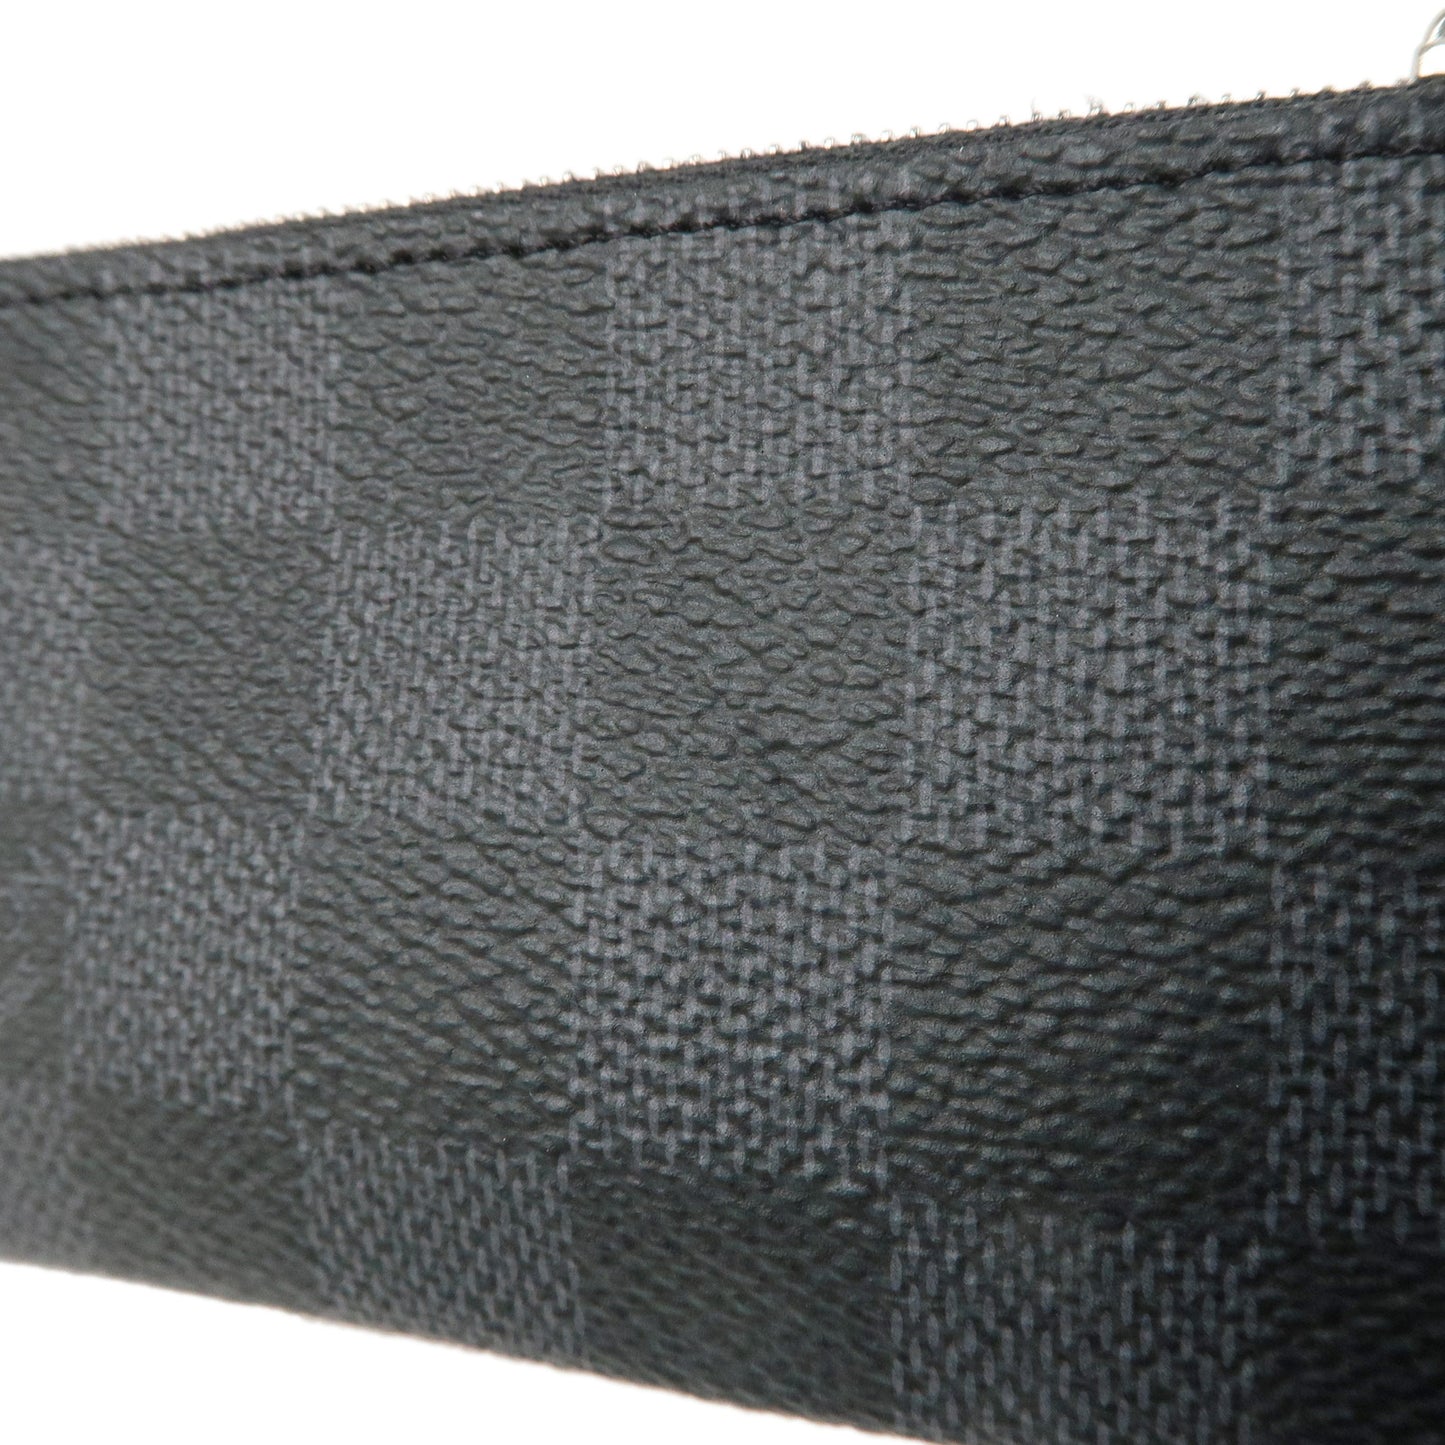 Louis Vuitton Damier Graphite Pochette Cles Coin Case Black N60155